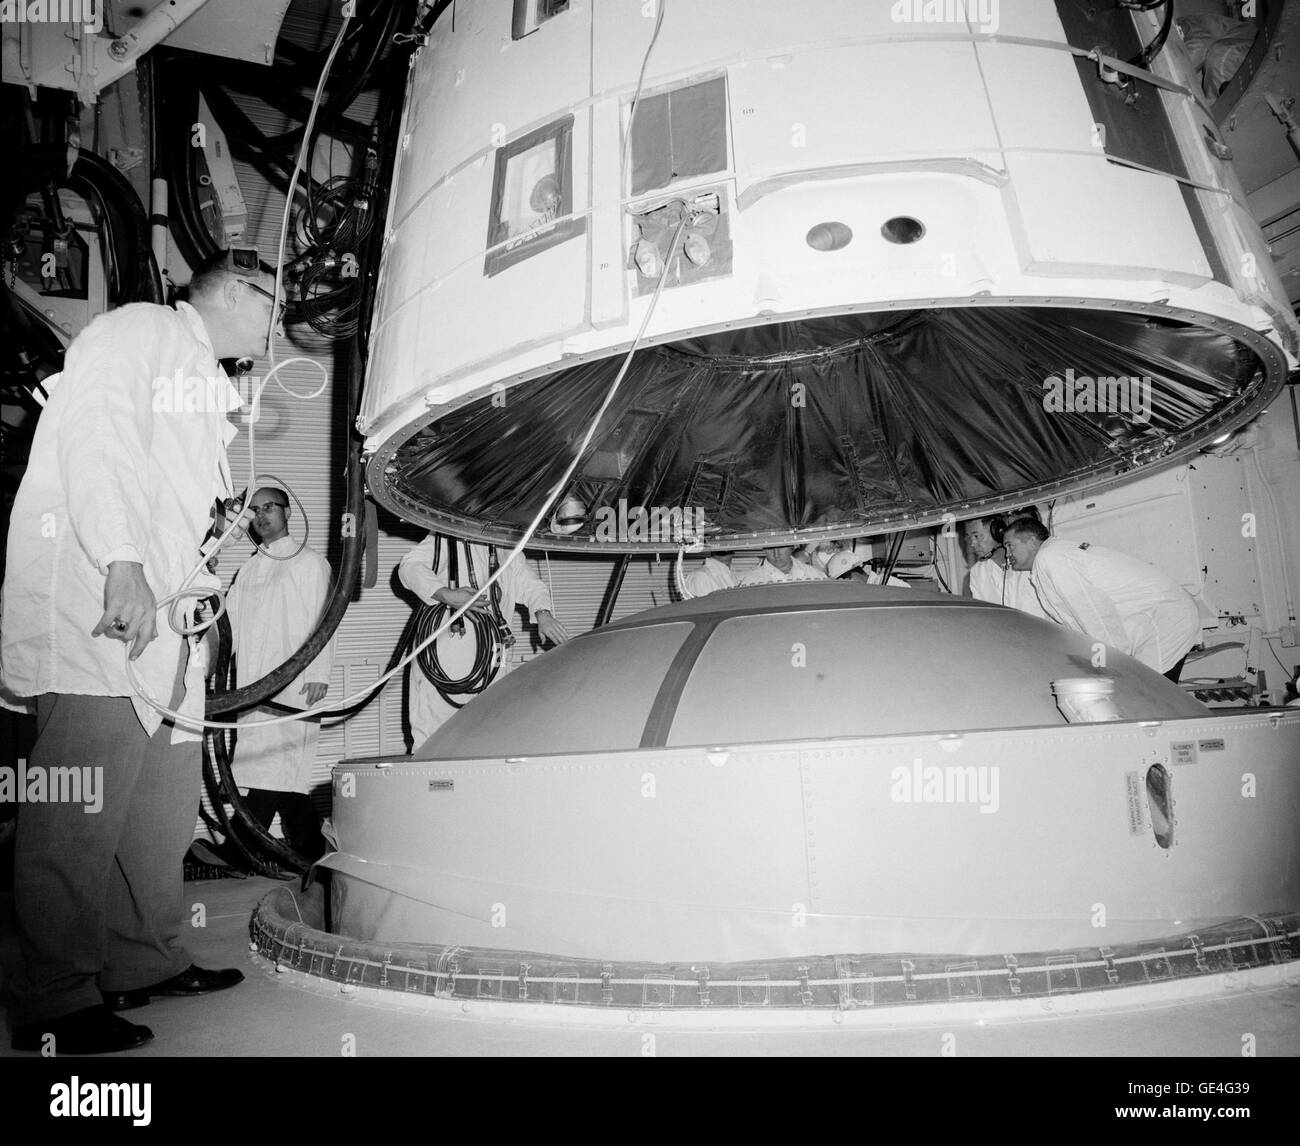 Le vaisseau spatial Gemini III est accouplé avec le Titan II dans la chambre blanche de la Pad 19 au Centre spatial Kennedy. Virgil I. Grissom (Gus) et John Young rode la capsule dans l'espace le 23 mars 1965 pour une mission d'une durée de près de cinq heures. La paire d'astronautes a testé l'engin sur le premier vol Gemini. Image #  : S65-17337 Date : Février, 1965 Banque D'Images